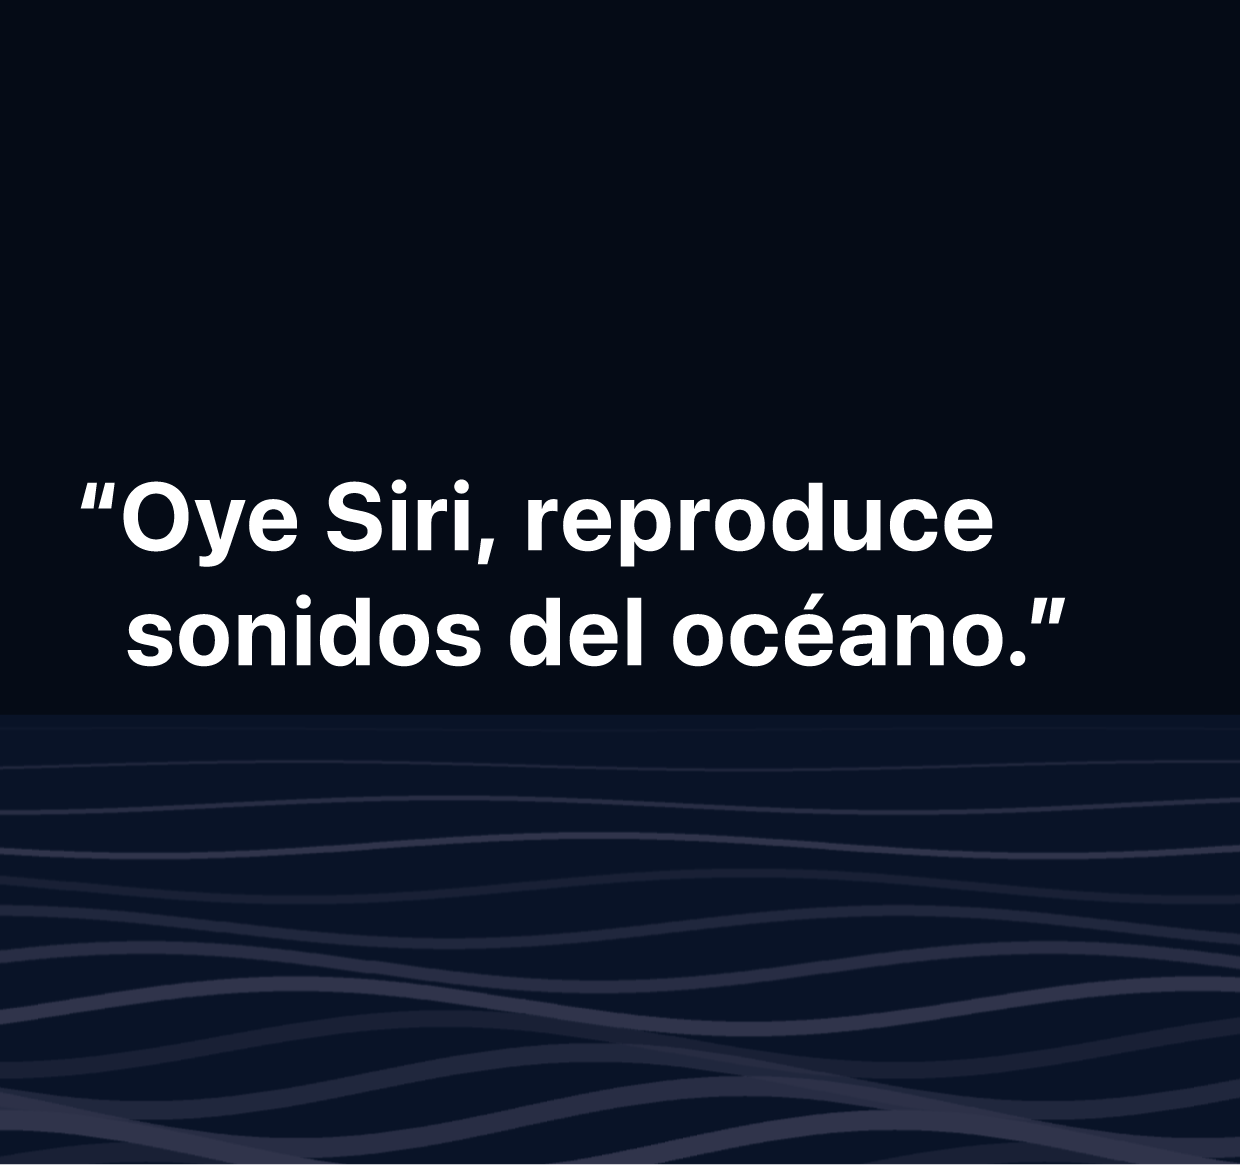 Ilustración con la frase “Oye Siri, reproduce sonidos del océano”.